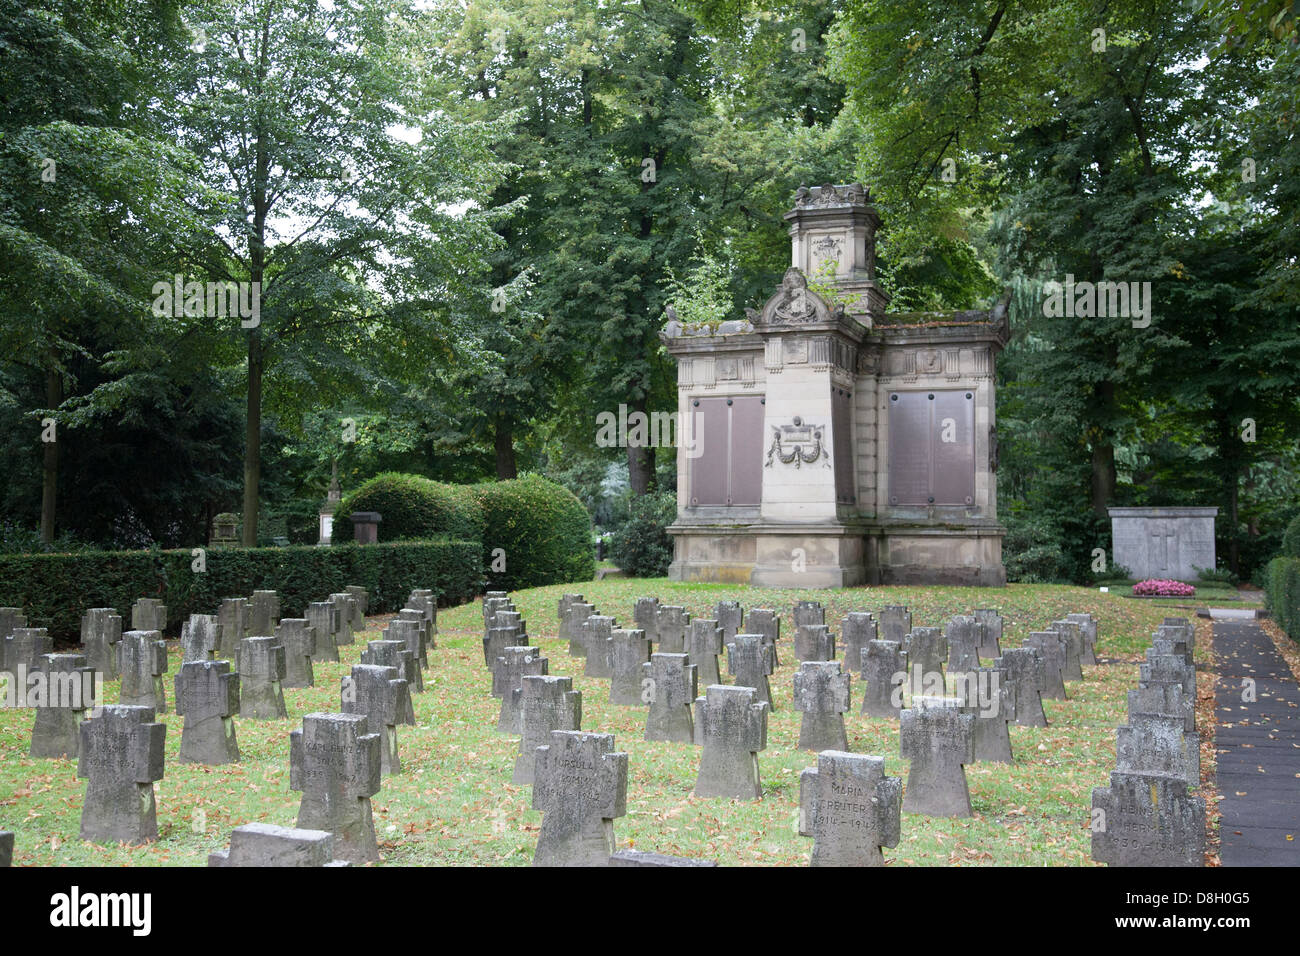 Melaten Friedhof, el cementerio de Melaten, en Colonia, Alemania Foto de stock